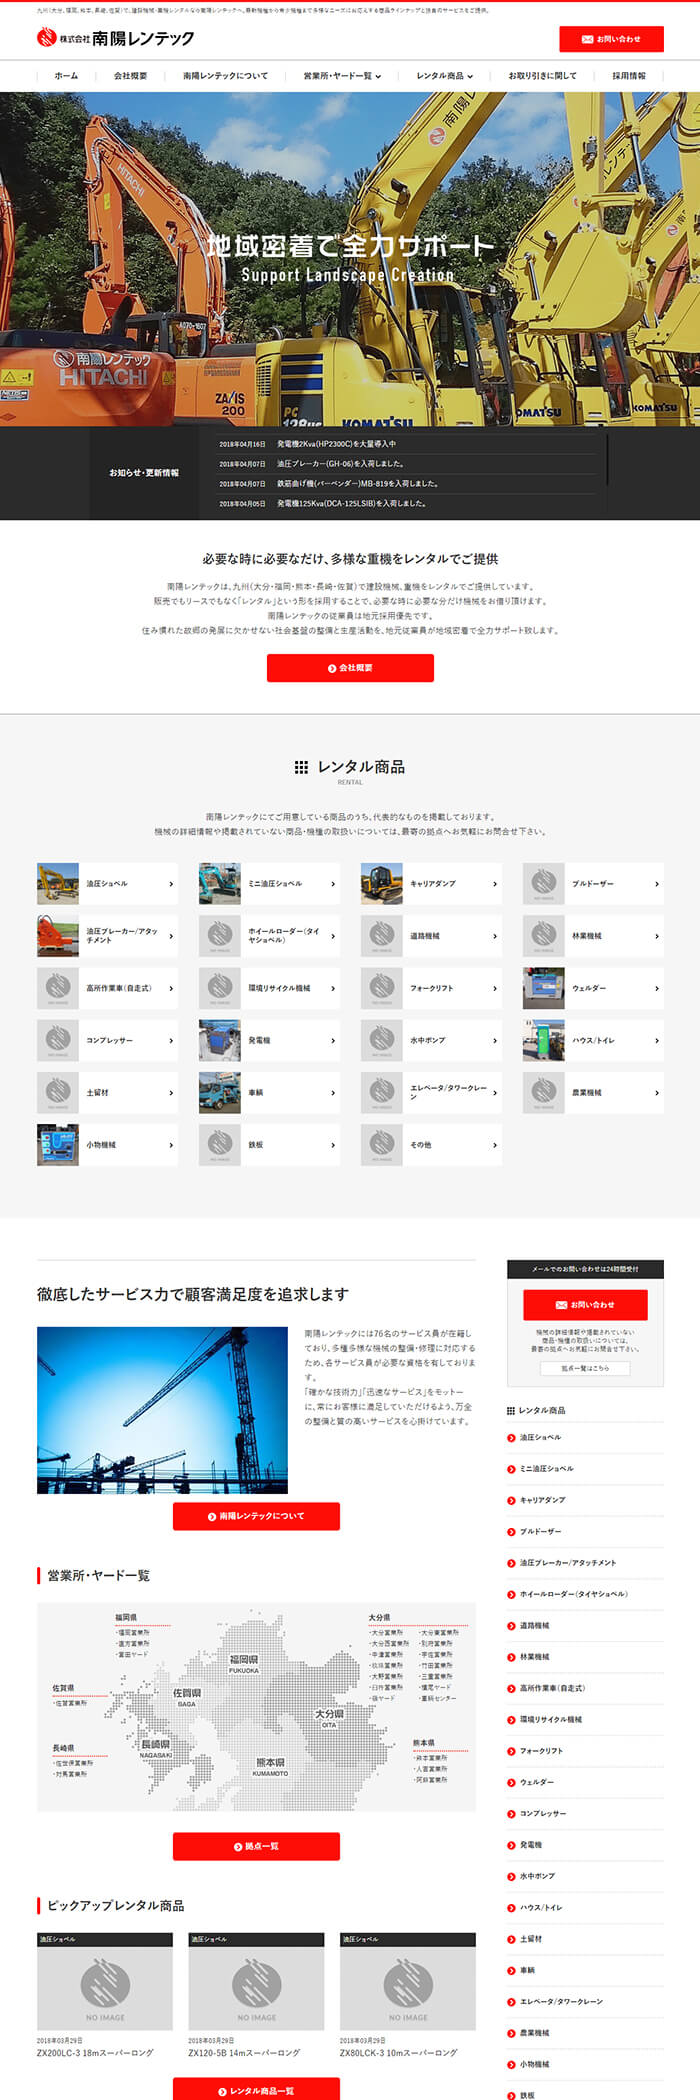 株式会社南陽レンテック様ホームページ制作実績 デスクトップイメージ